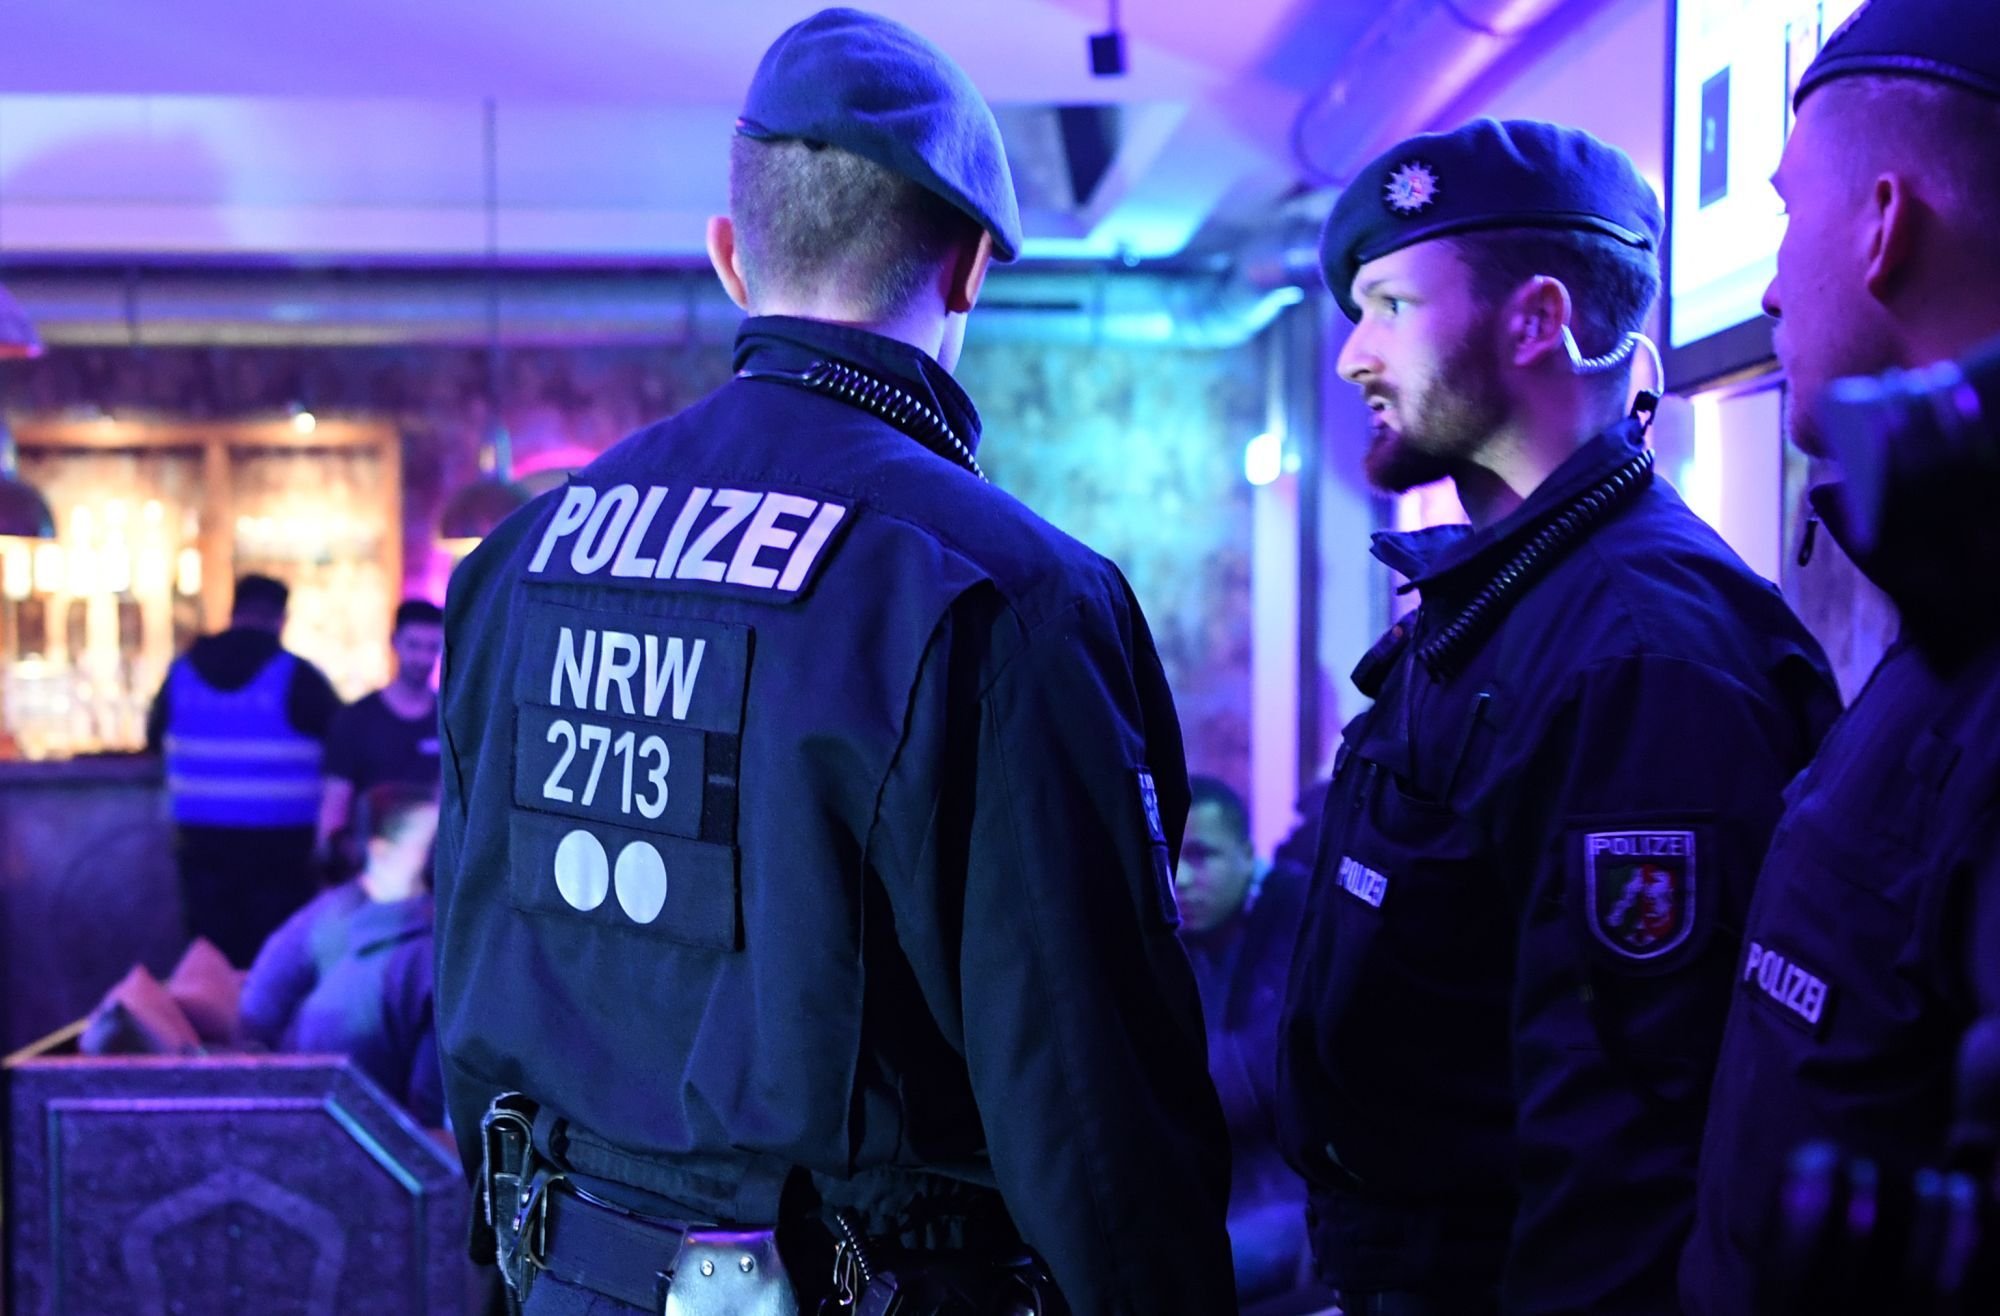 Stadthalle Rostock: Polizei ermittelt erneut wegen K.o.-Tropfen